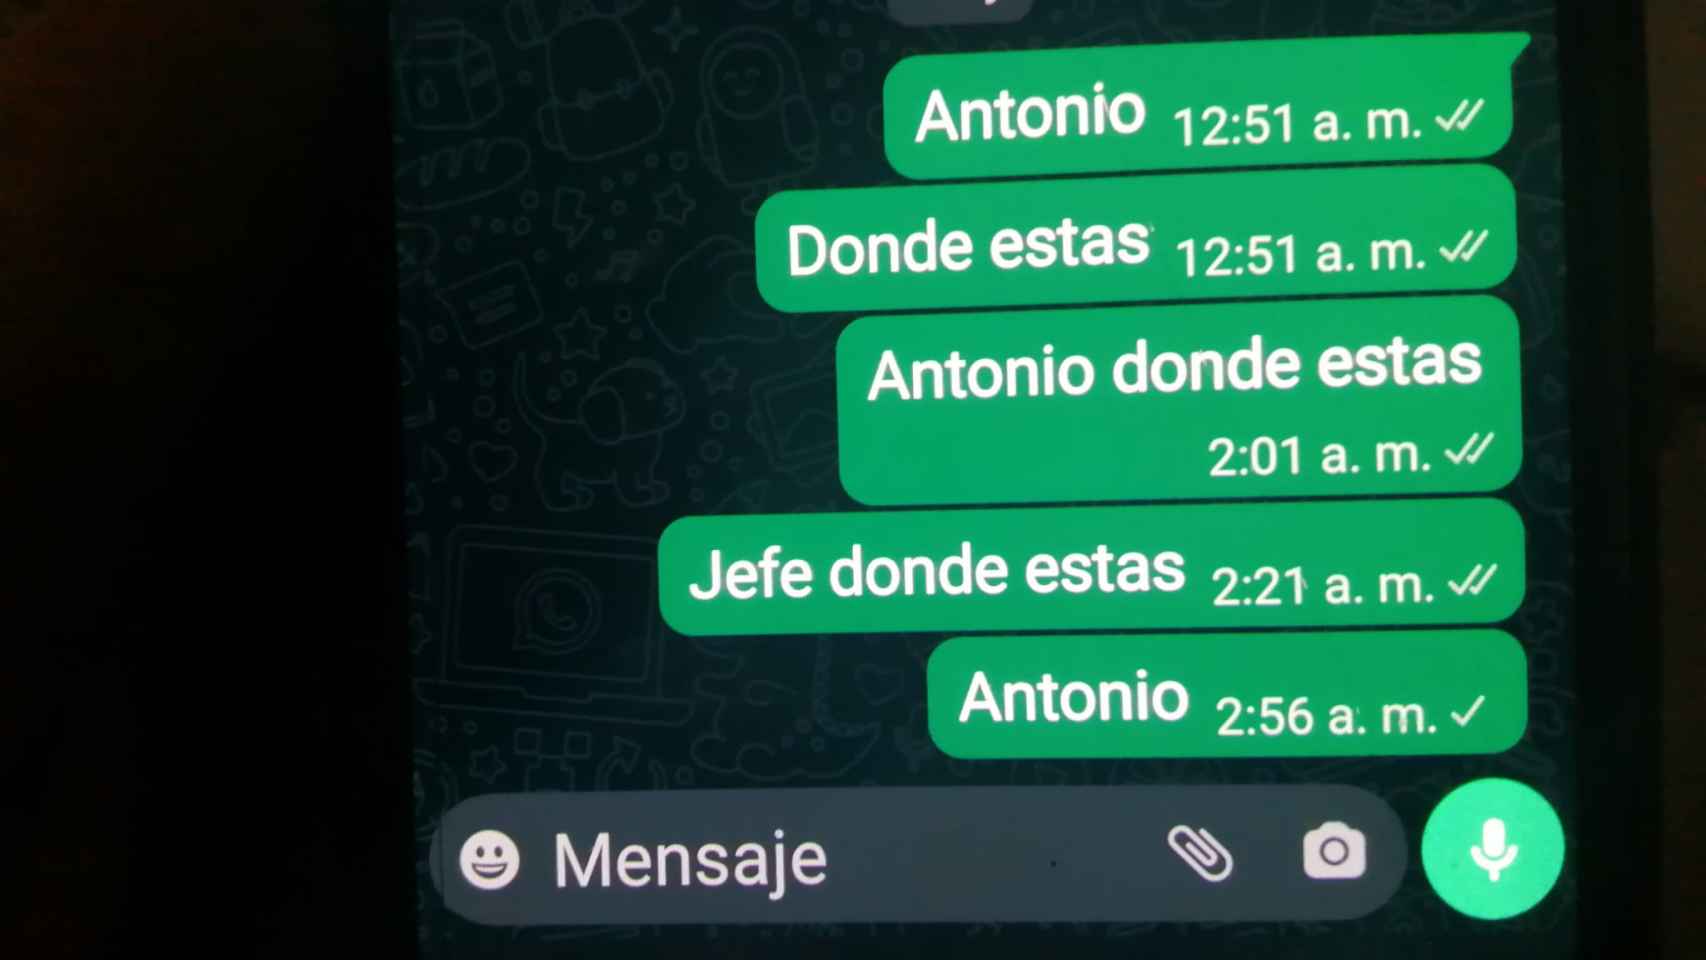 Mensajes enviados en la madrugada del 8 de diciembre al móvil de Antonio, que no contestó porque horas antes ya había muerto de un infarto diabético.